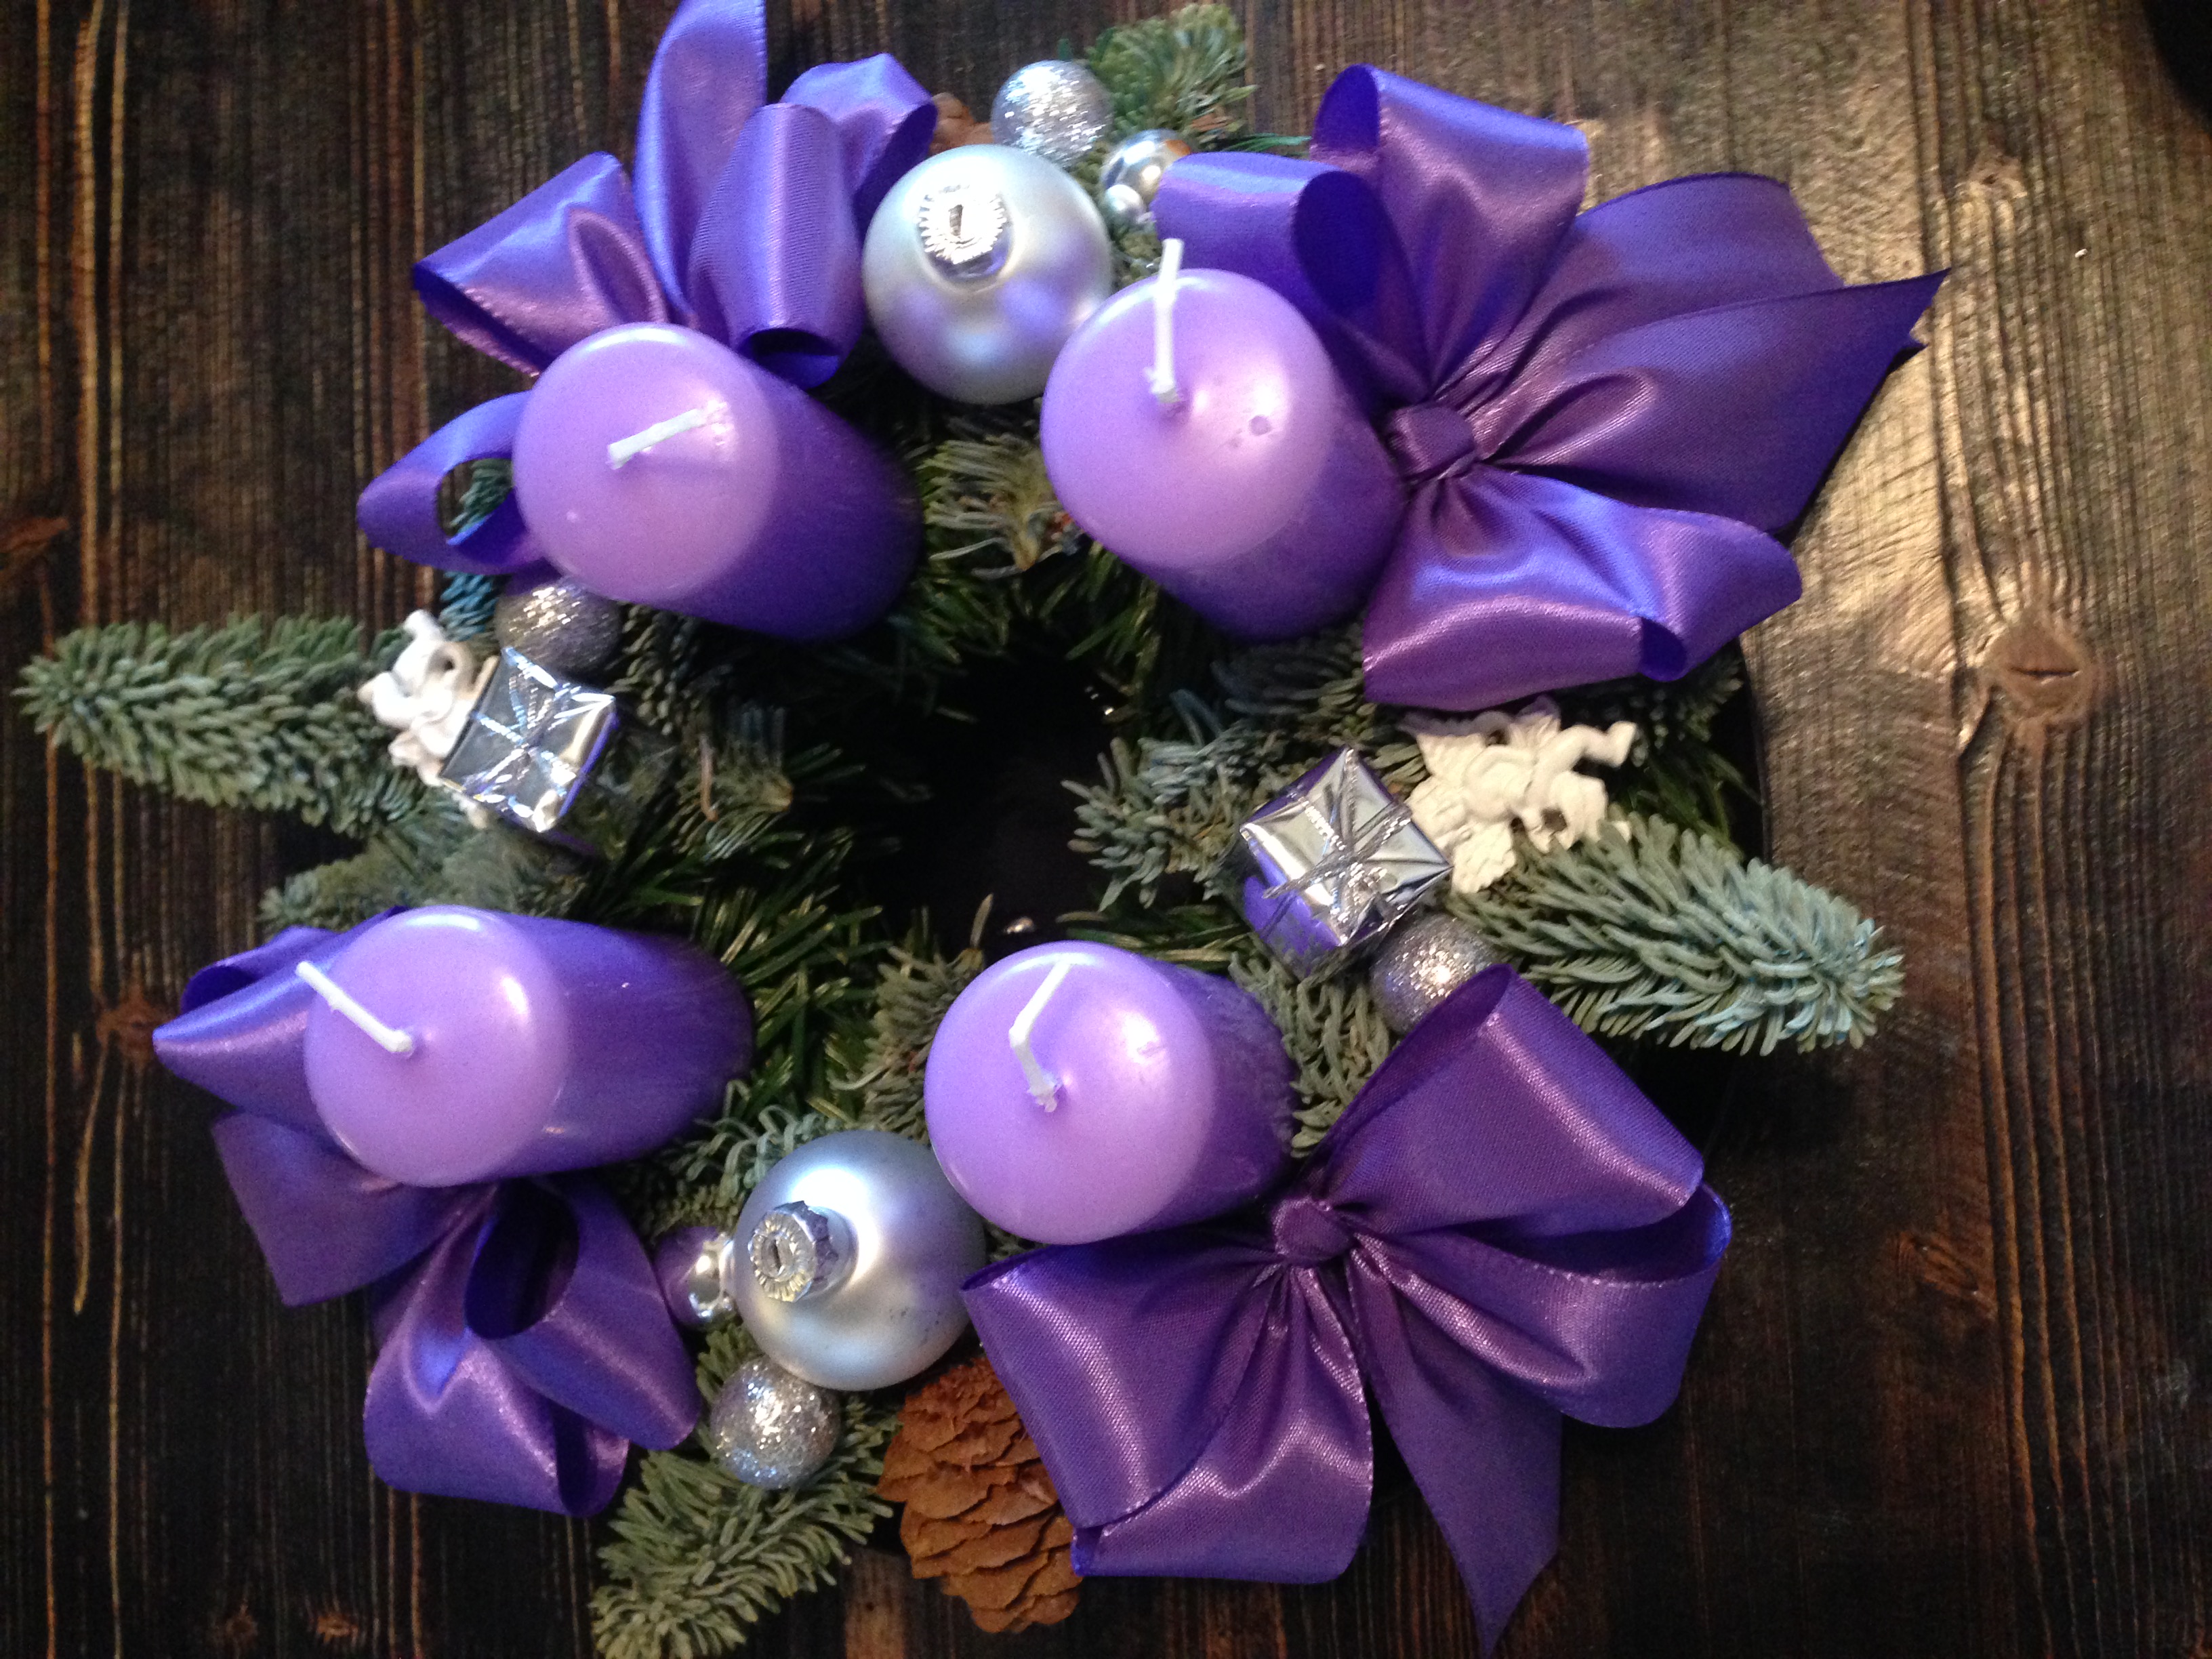 Adventkranz mit violetten Kerzen, silbernen Weihnachtskugeln und purpurnen Stoffmaschen